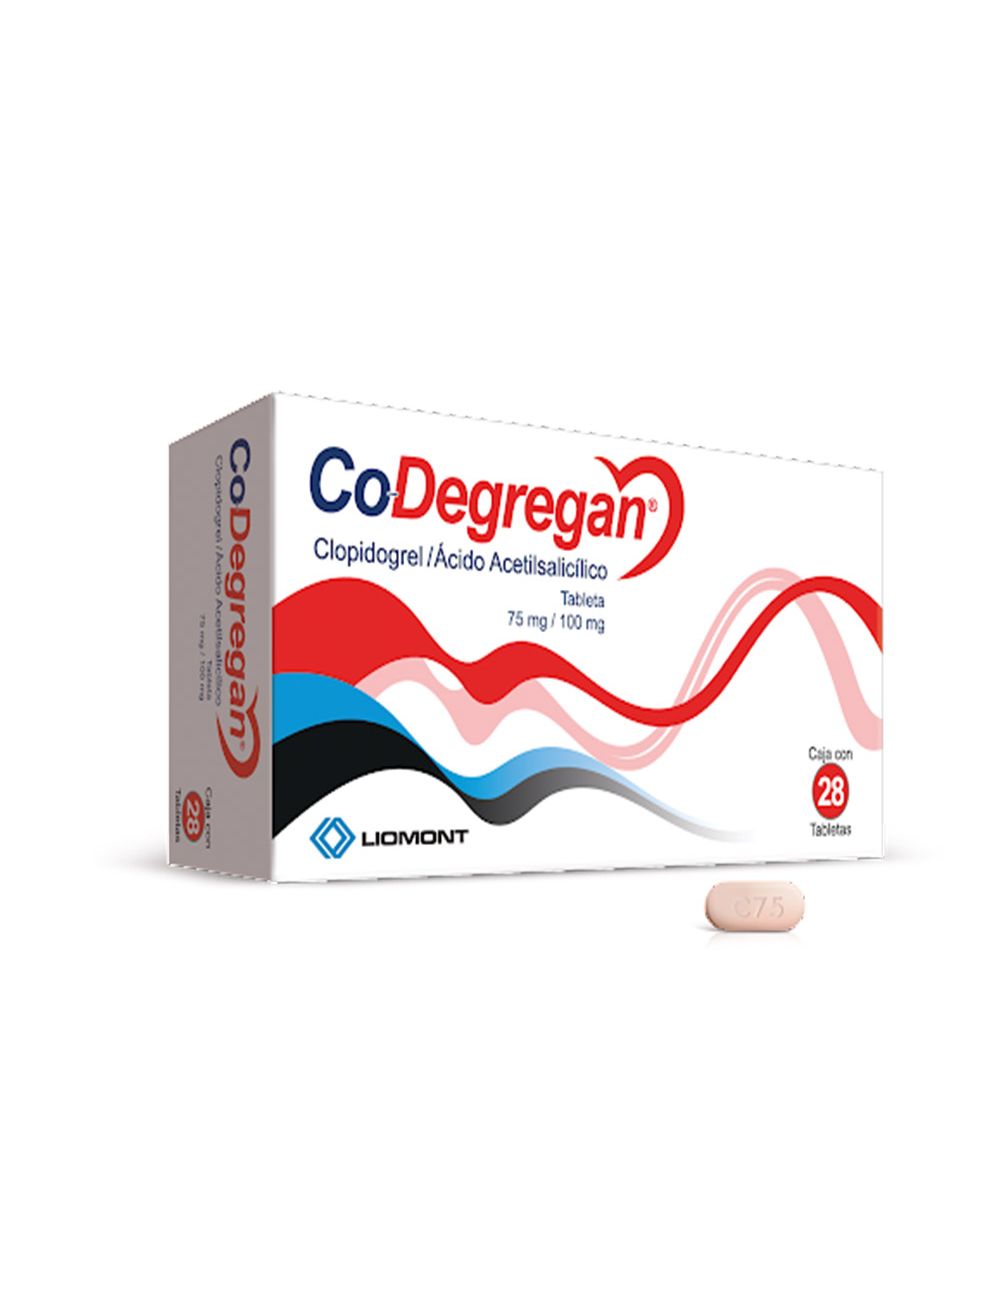 Co-Degregan 75 mg /100 mg Con 28 Tabletas